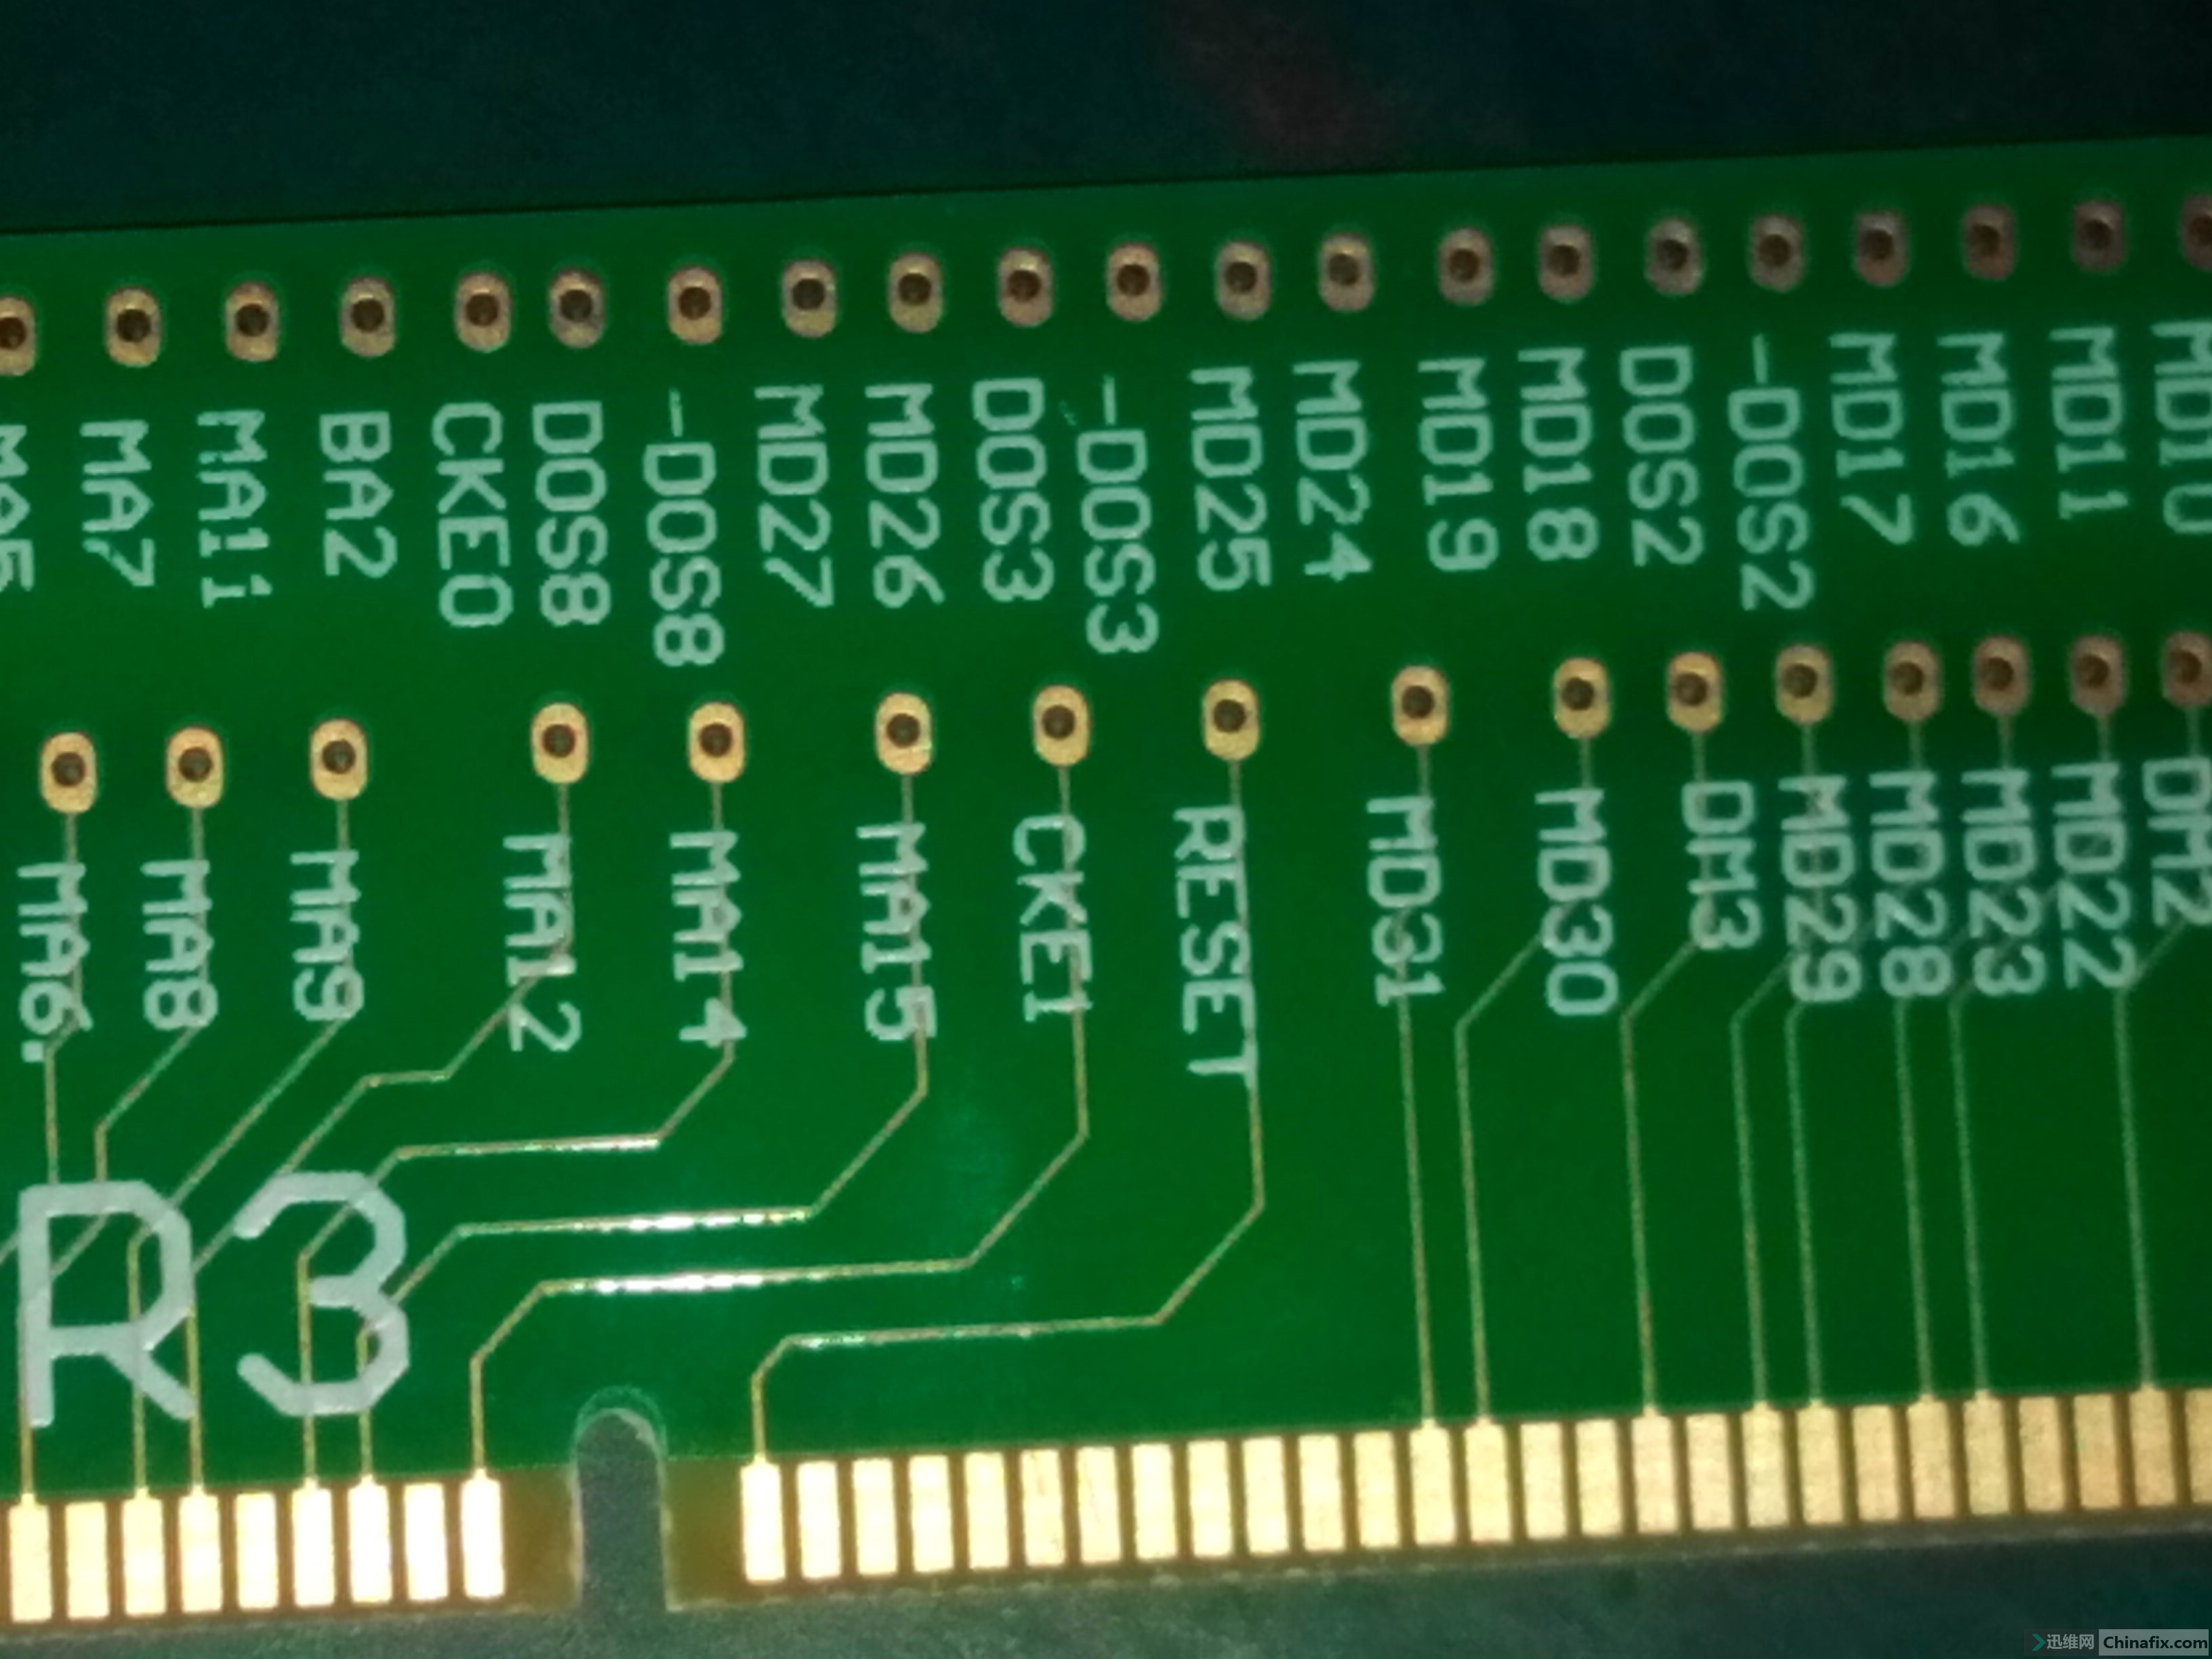 DDR3内存管脚图解密：速率提升、能耗降低，揭秘关键引脚功能  第2张